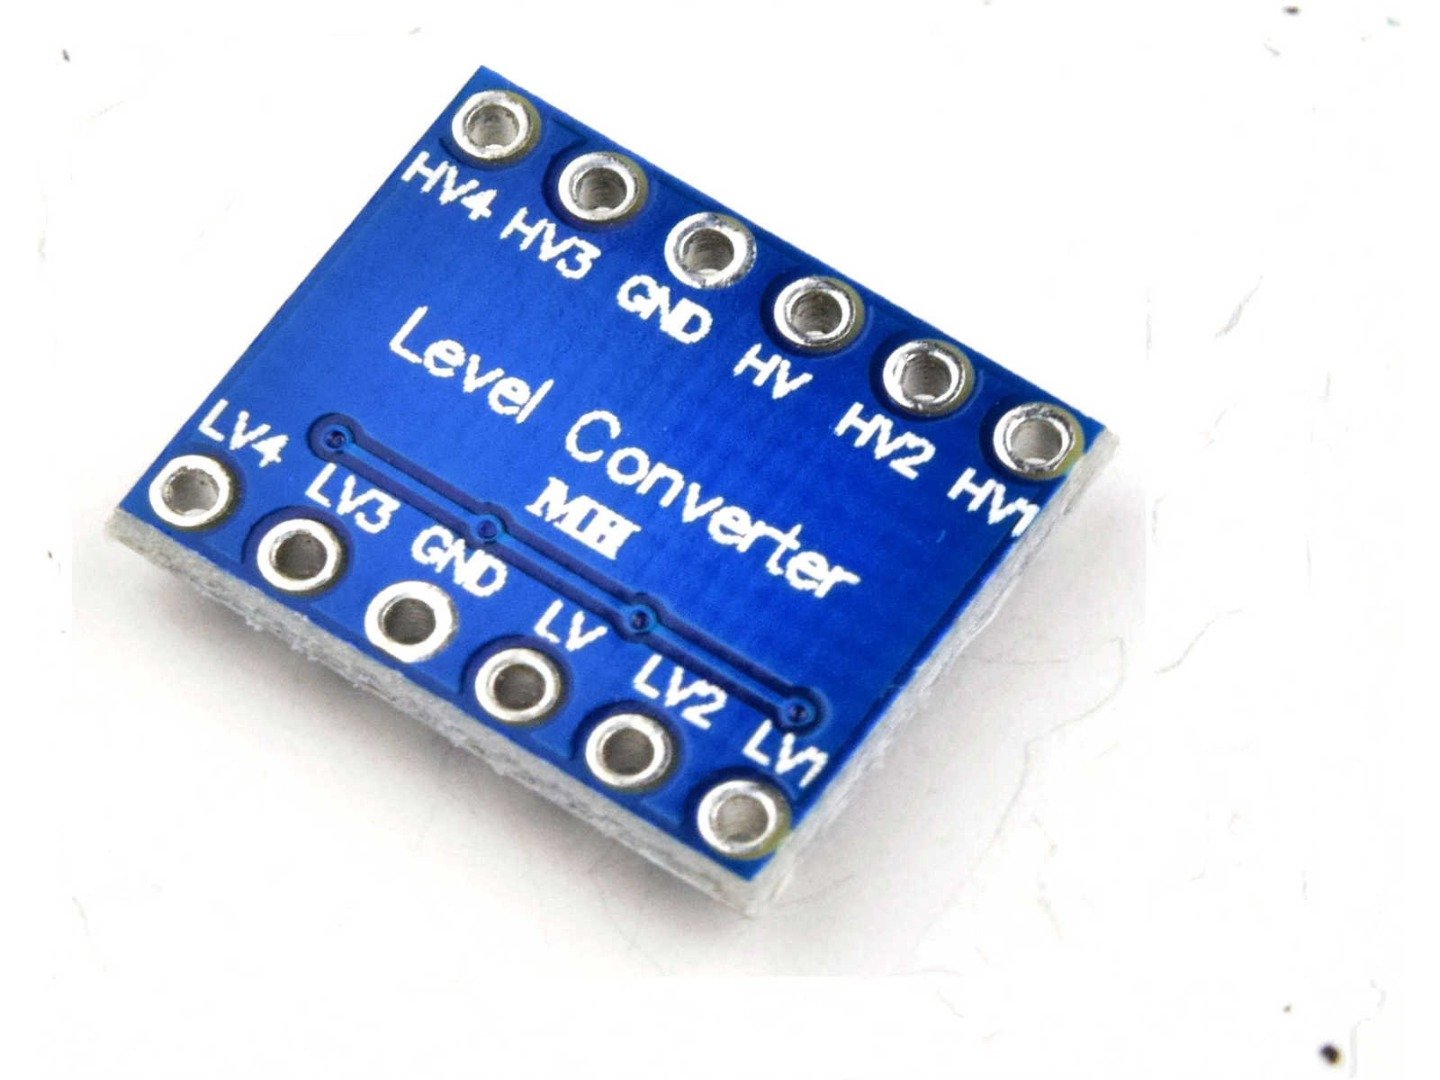 3 x Logic Level Converter 4-Channel 3.3V-5V Bi-Directional I2C ISP ICSP 8